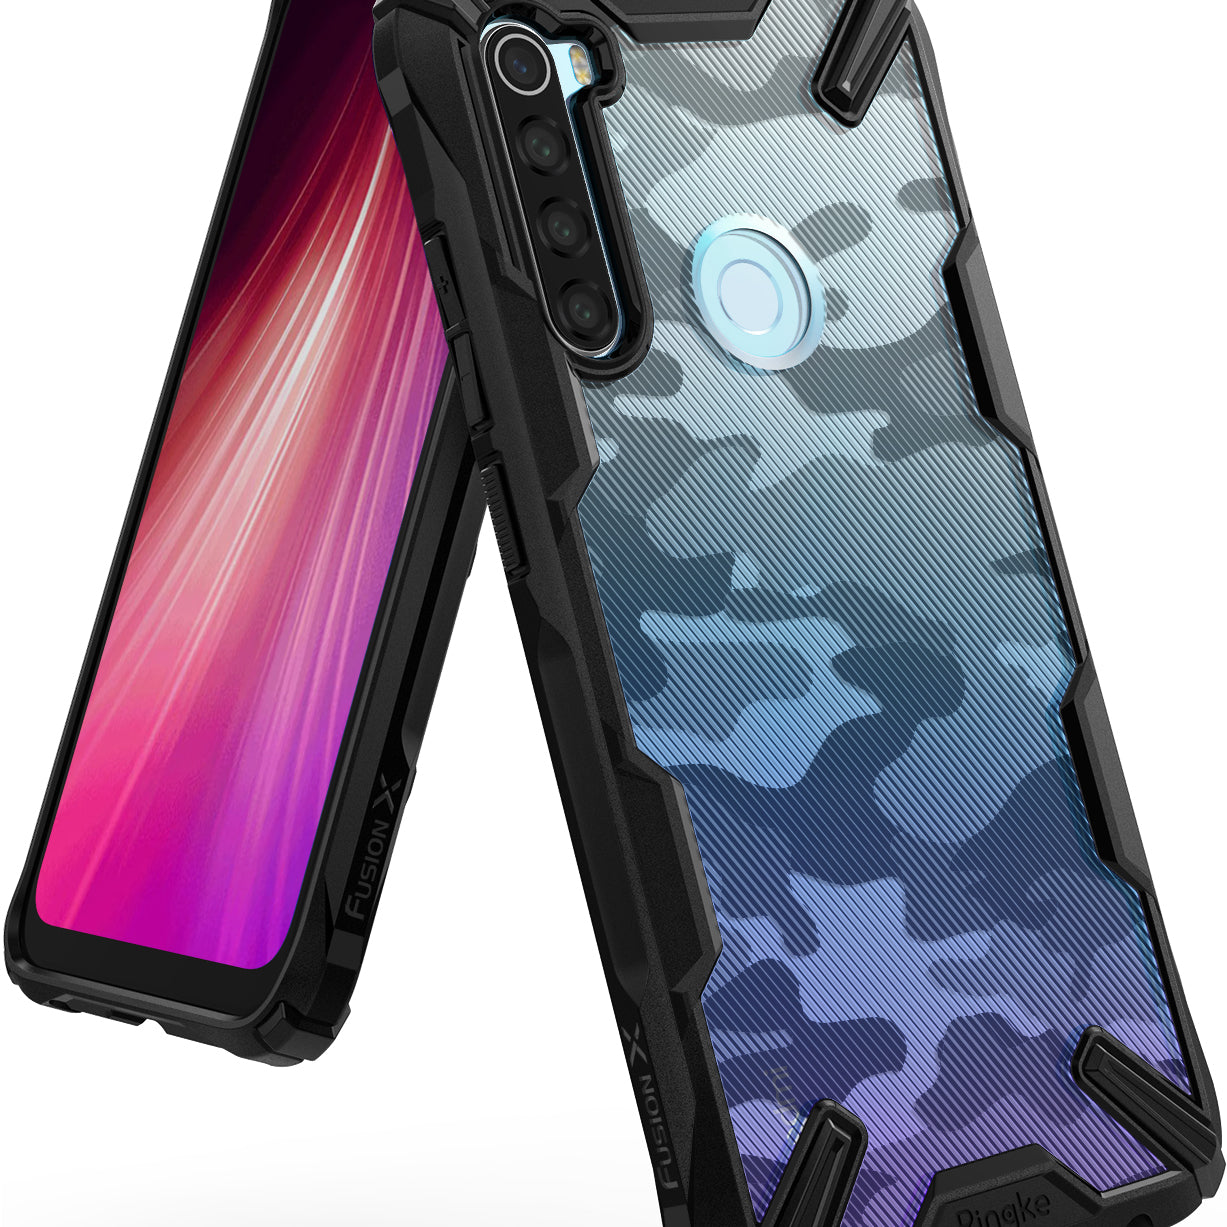 Ringke FUSION-X Design Case for Xiaomi Redmi Note 8 (2019) - camo black